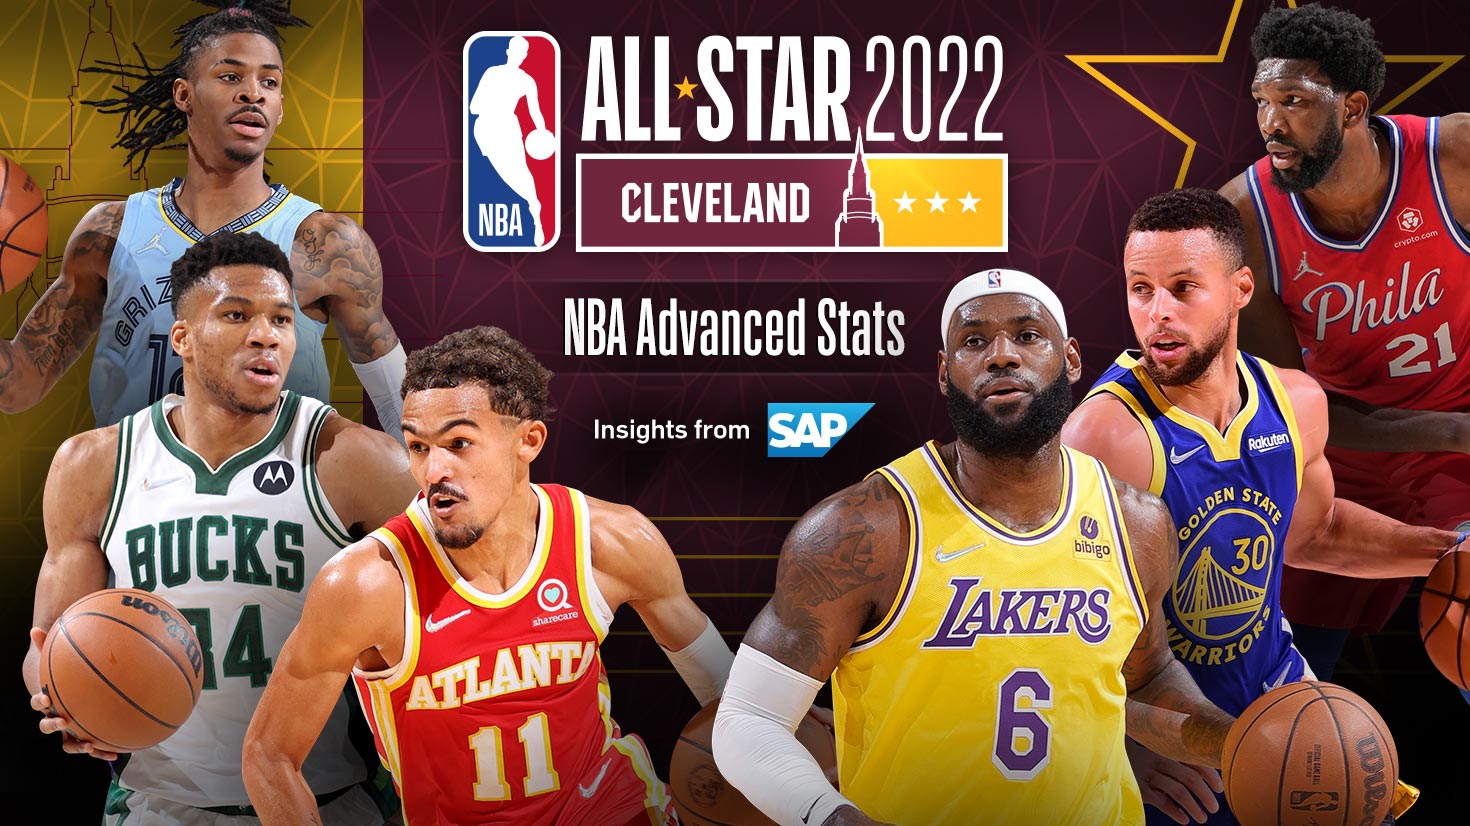 NBA All Star 2022 qua những con số thống kê thú vị - Ảnh 1.